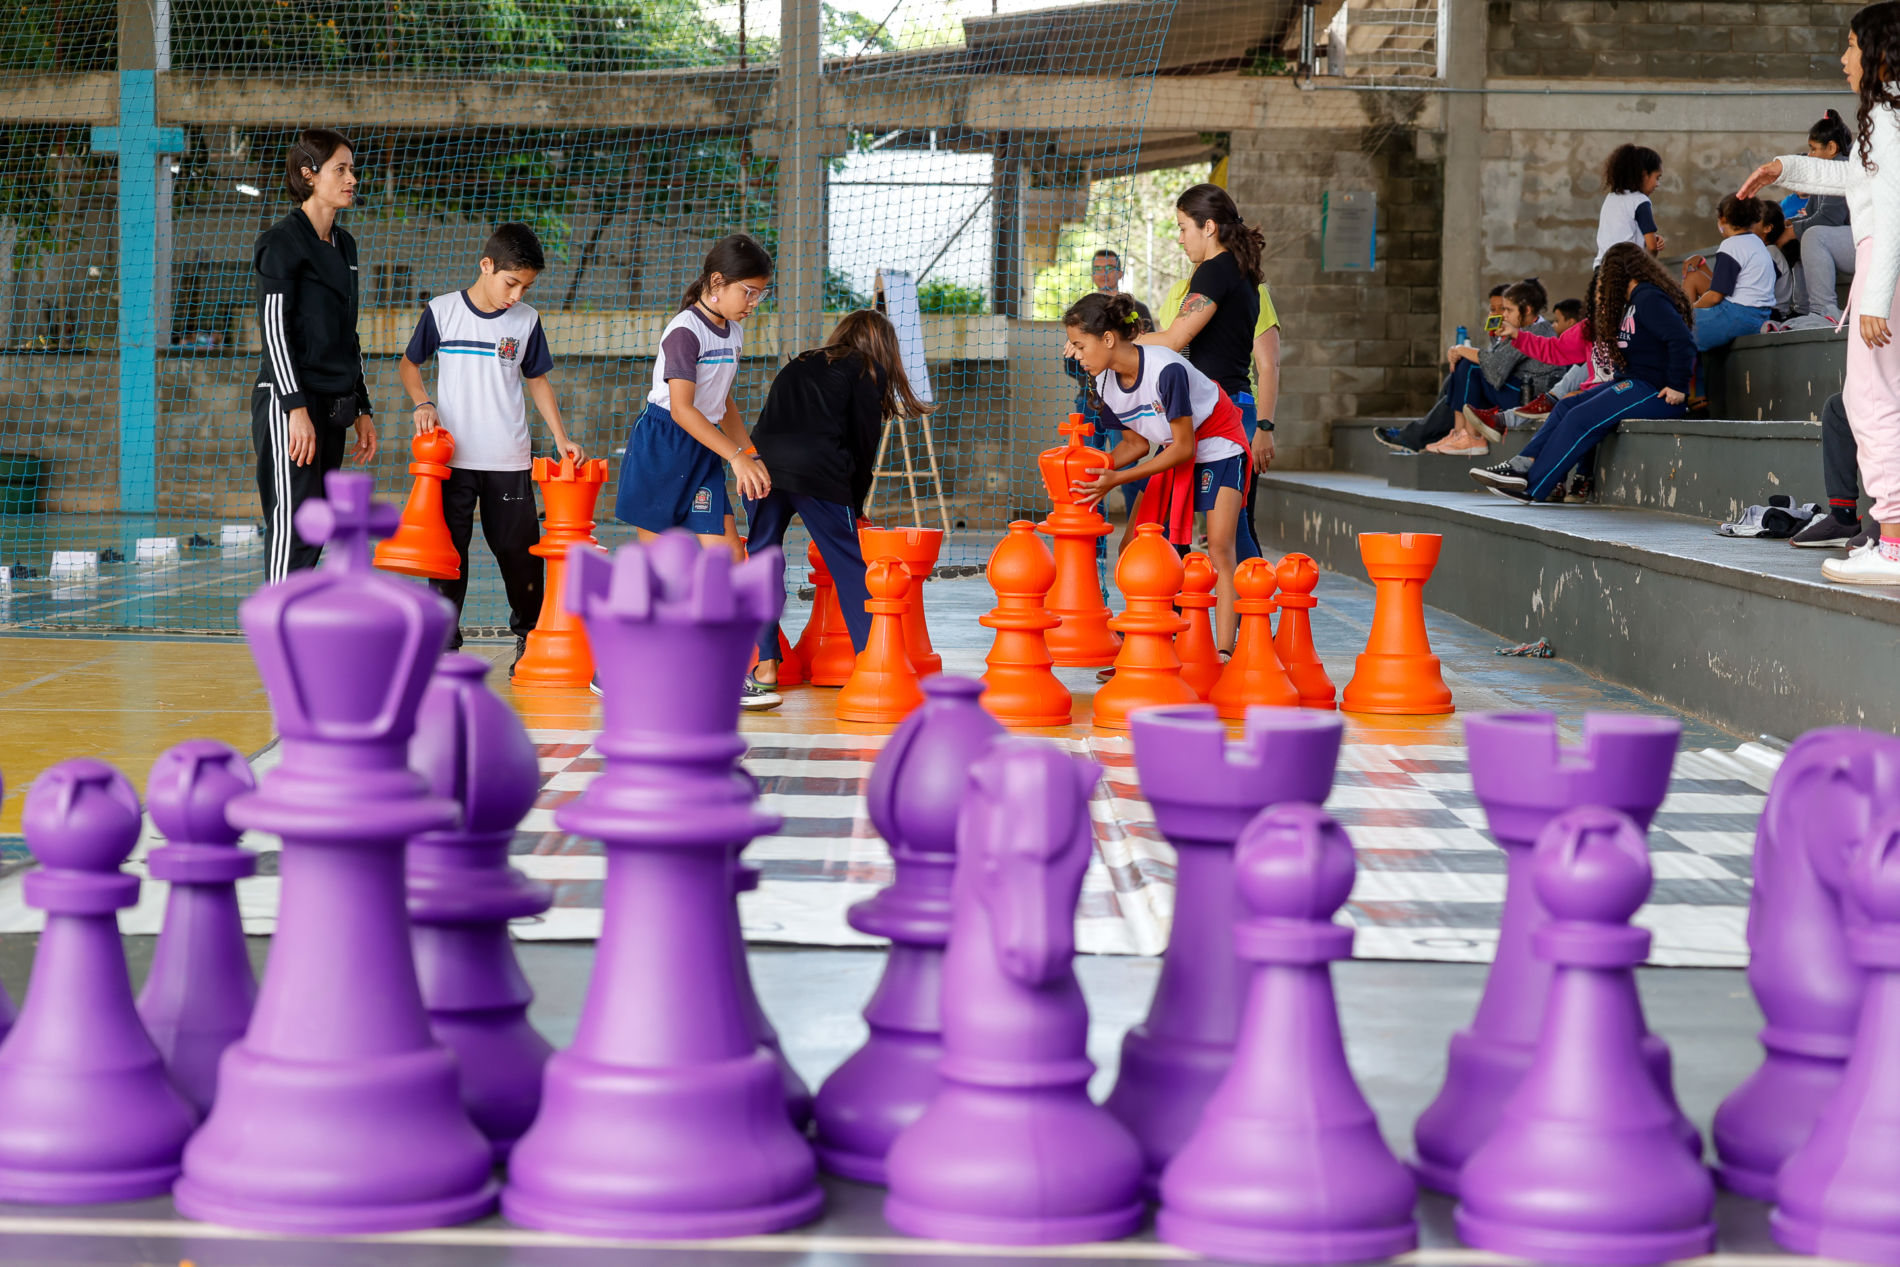 Torneio de xadrez reúne mais de cem estudantes em escola da zona